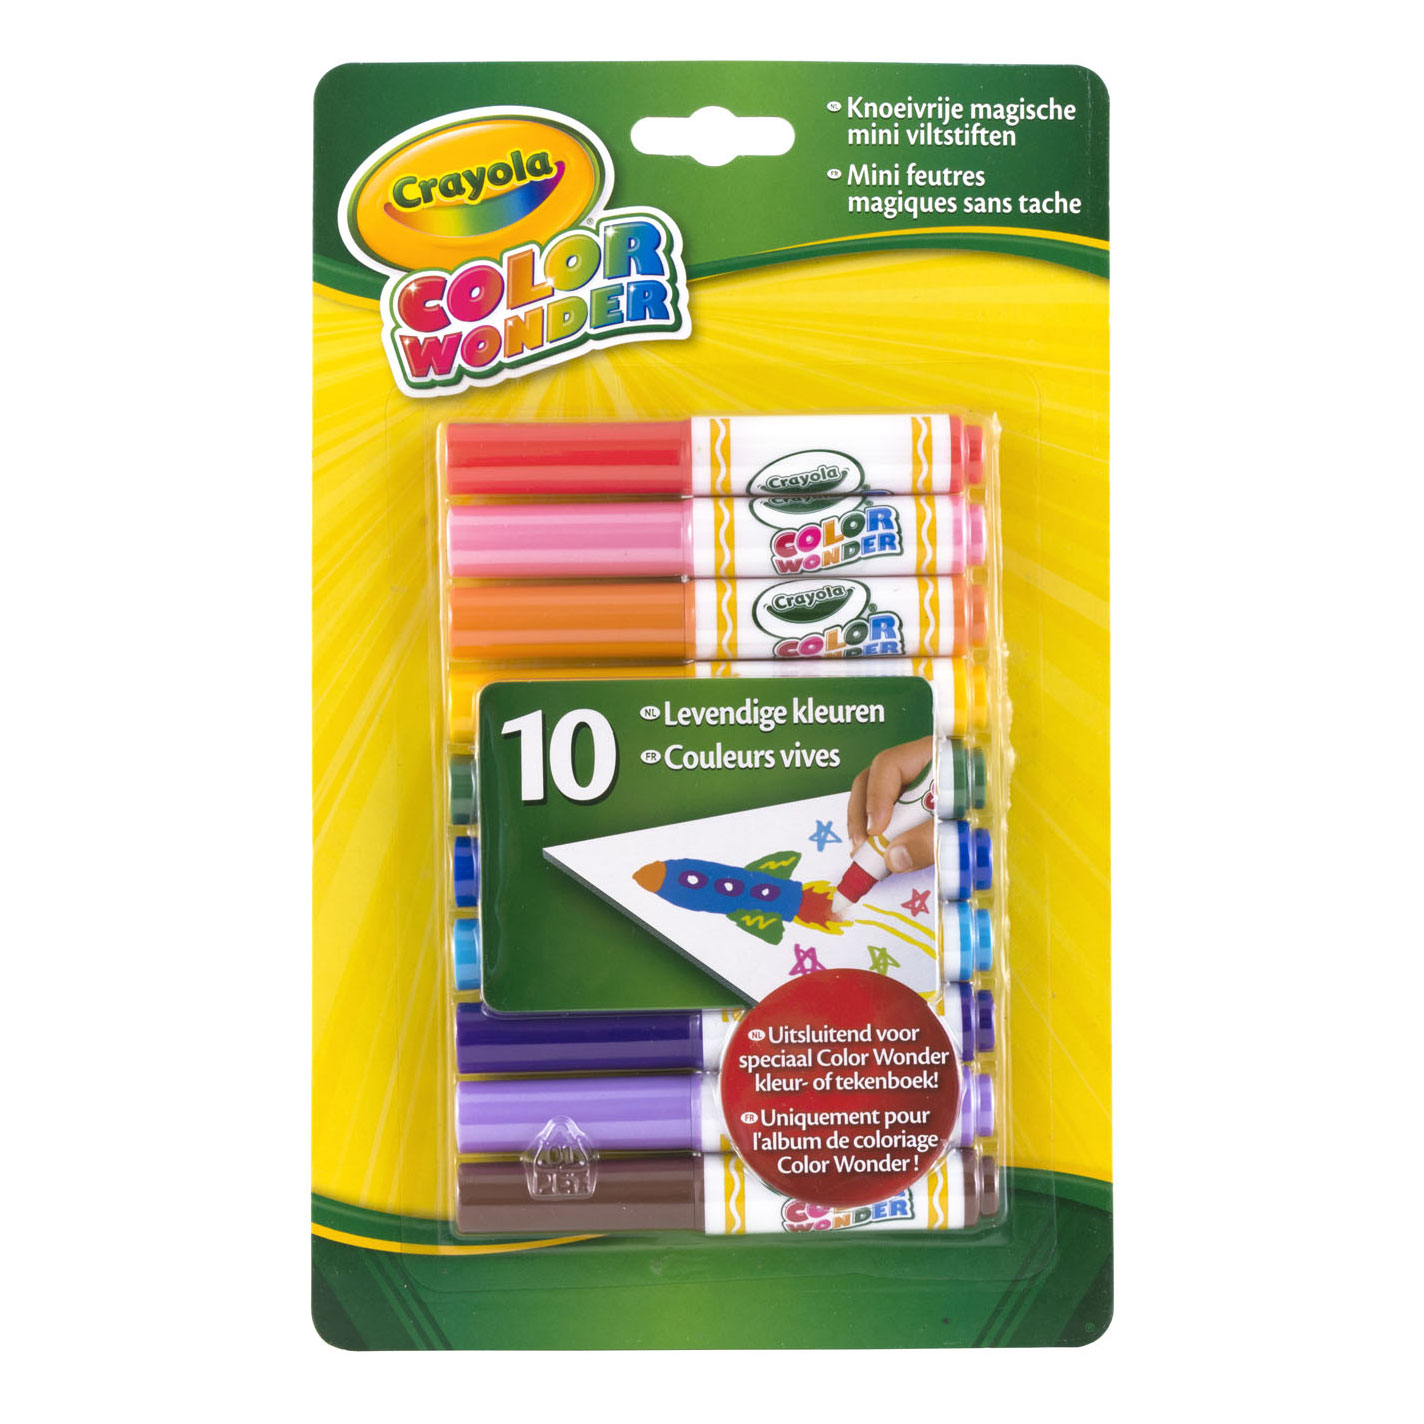 Crayola Color Wonder 10 Mini viltstiften